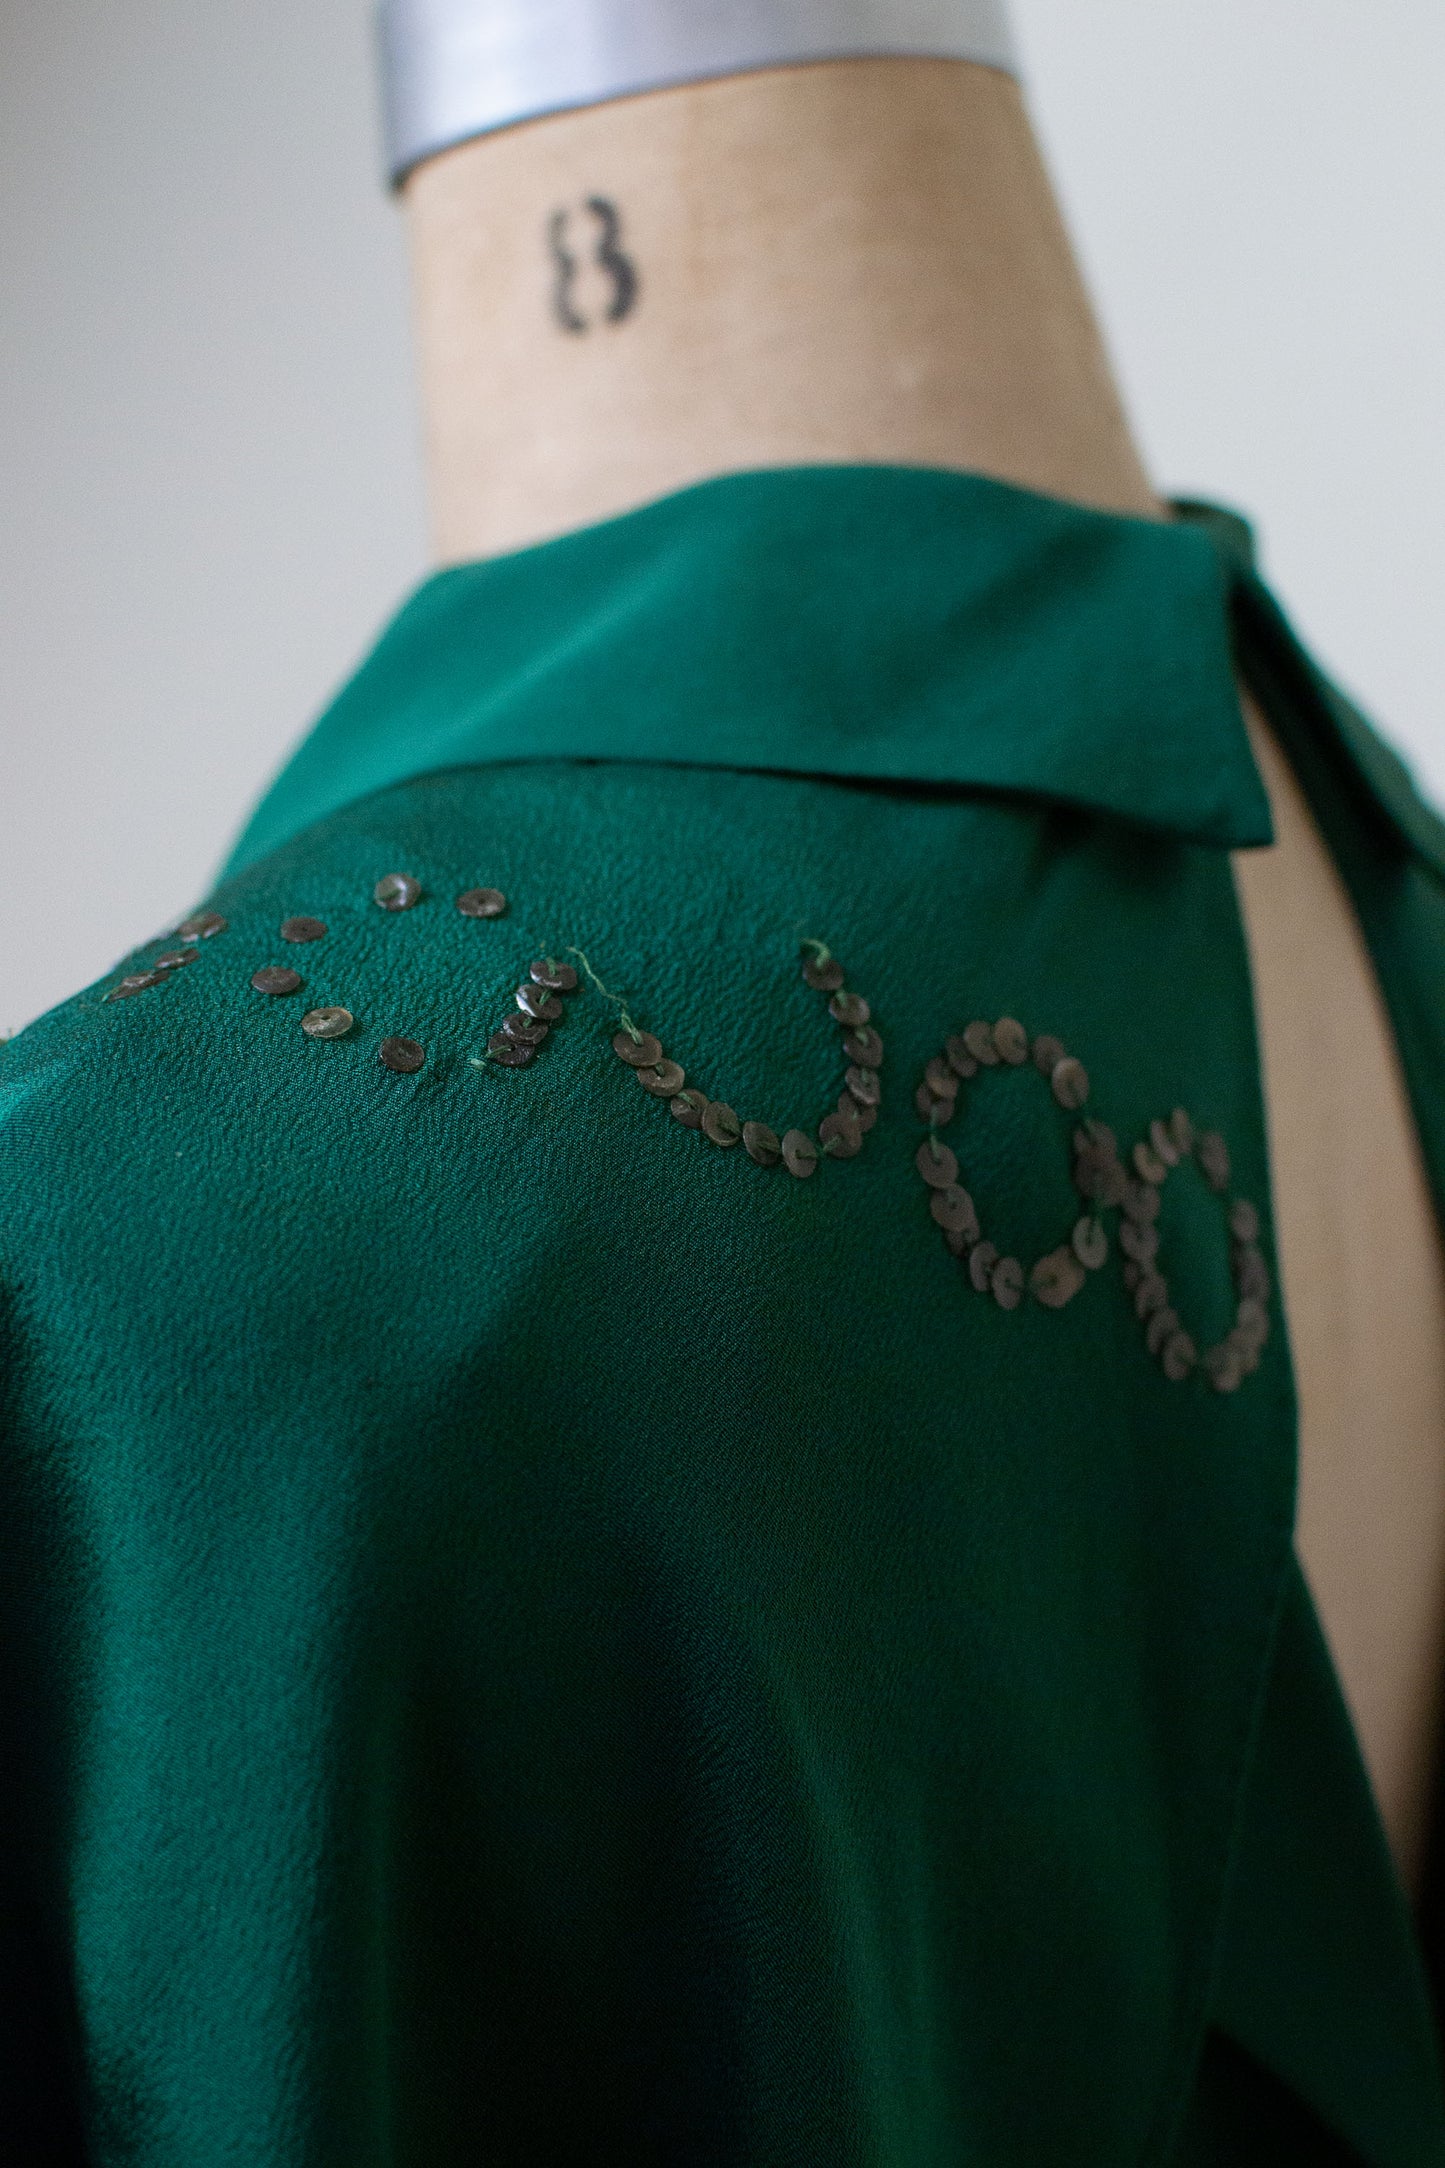 1930s Emerald Green Gown w/ Caplet